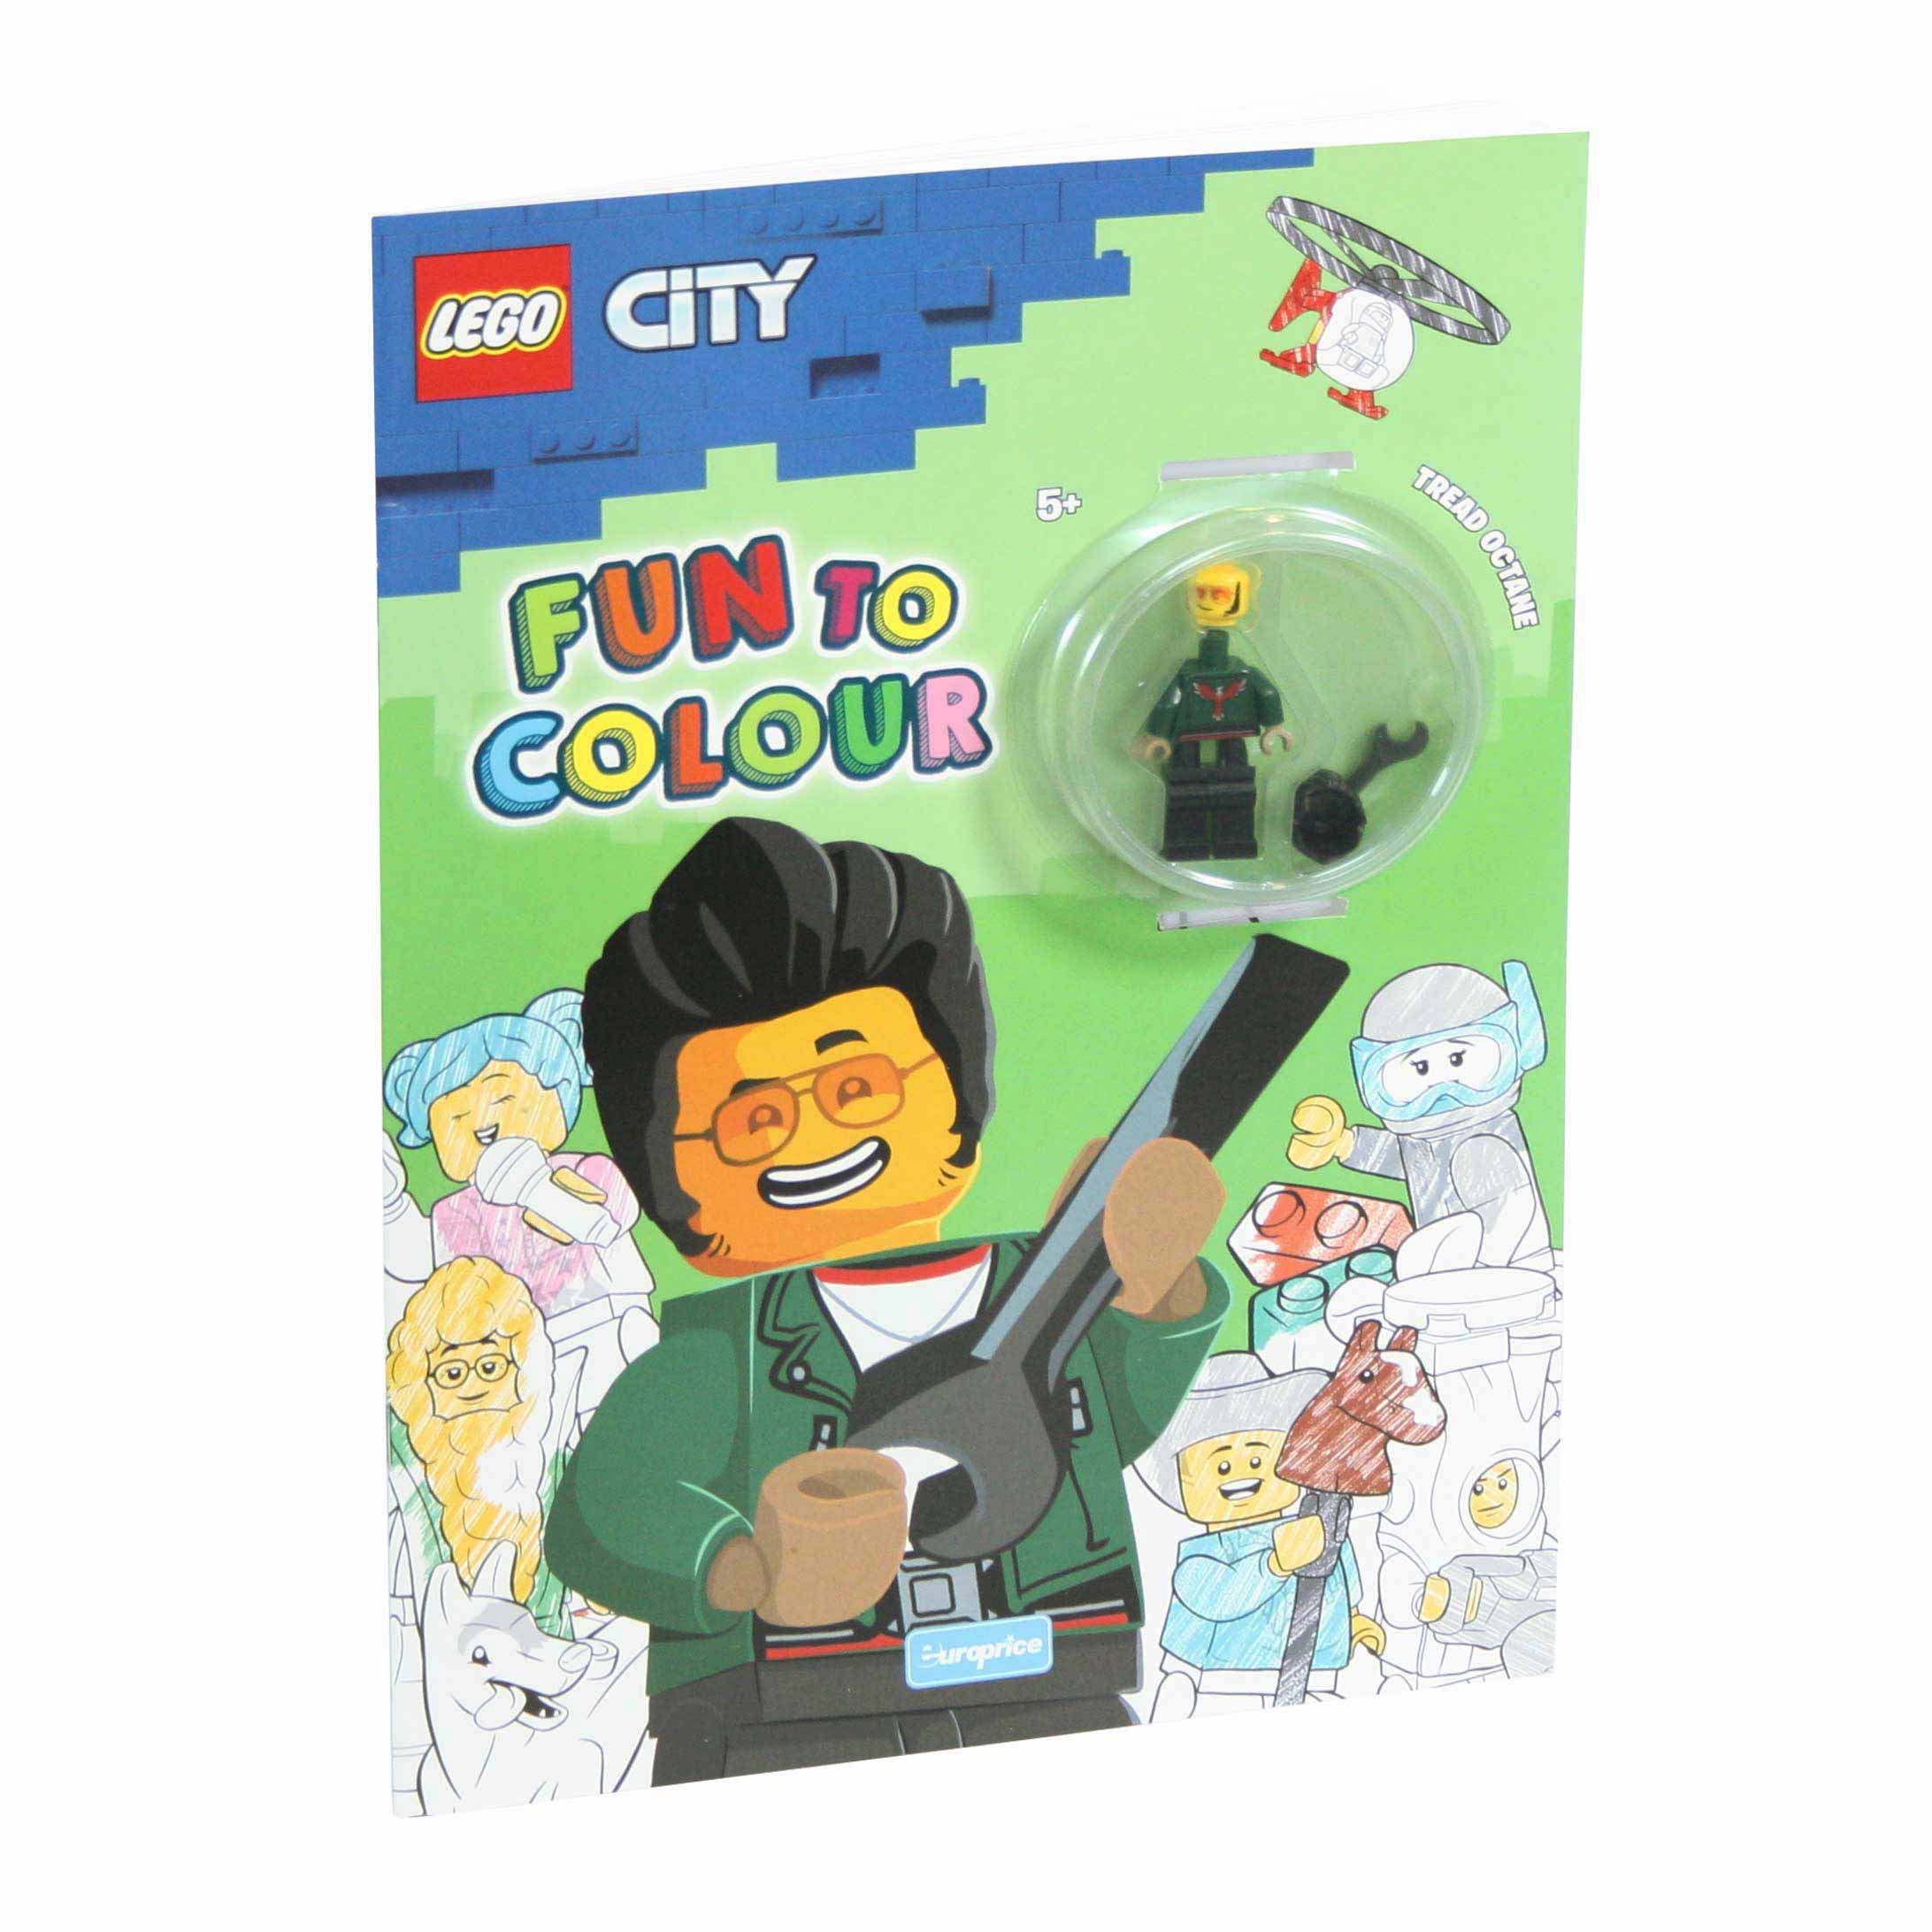 Imagem da capa do livro de pintar "Lego Fun to Colour - City Tread Octane" com a minifigura LEGO.